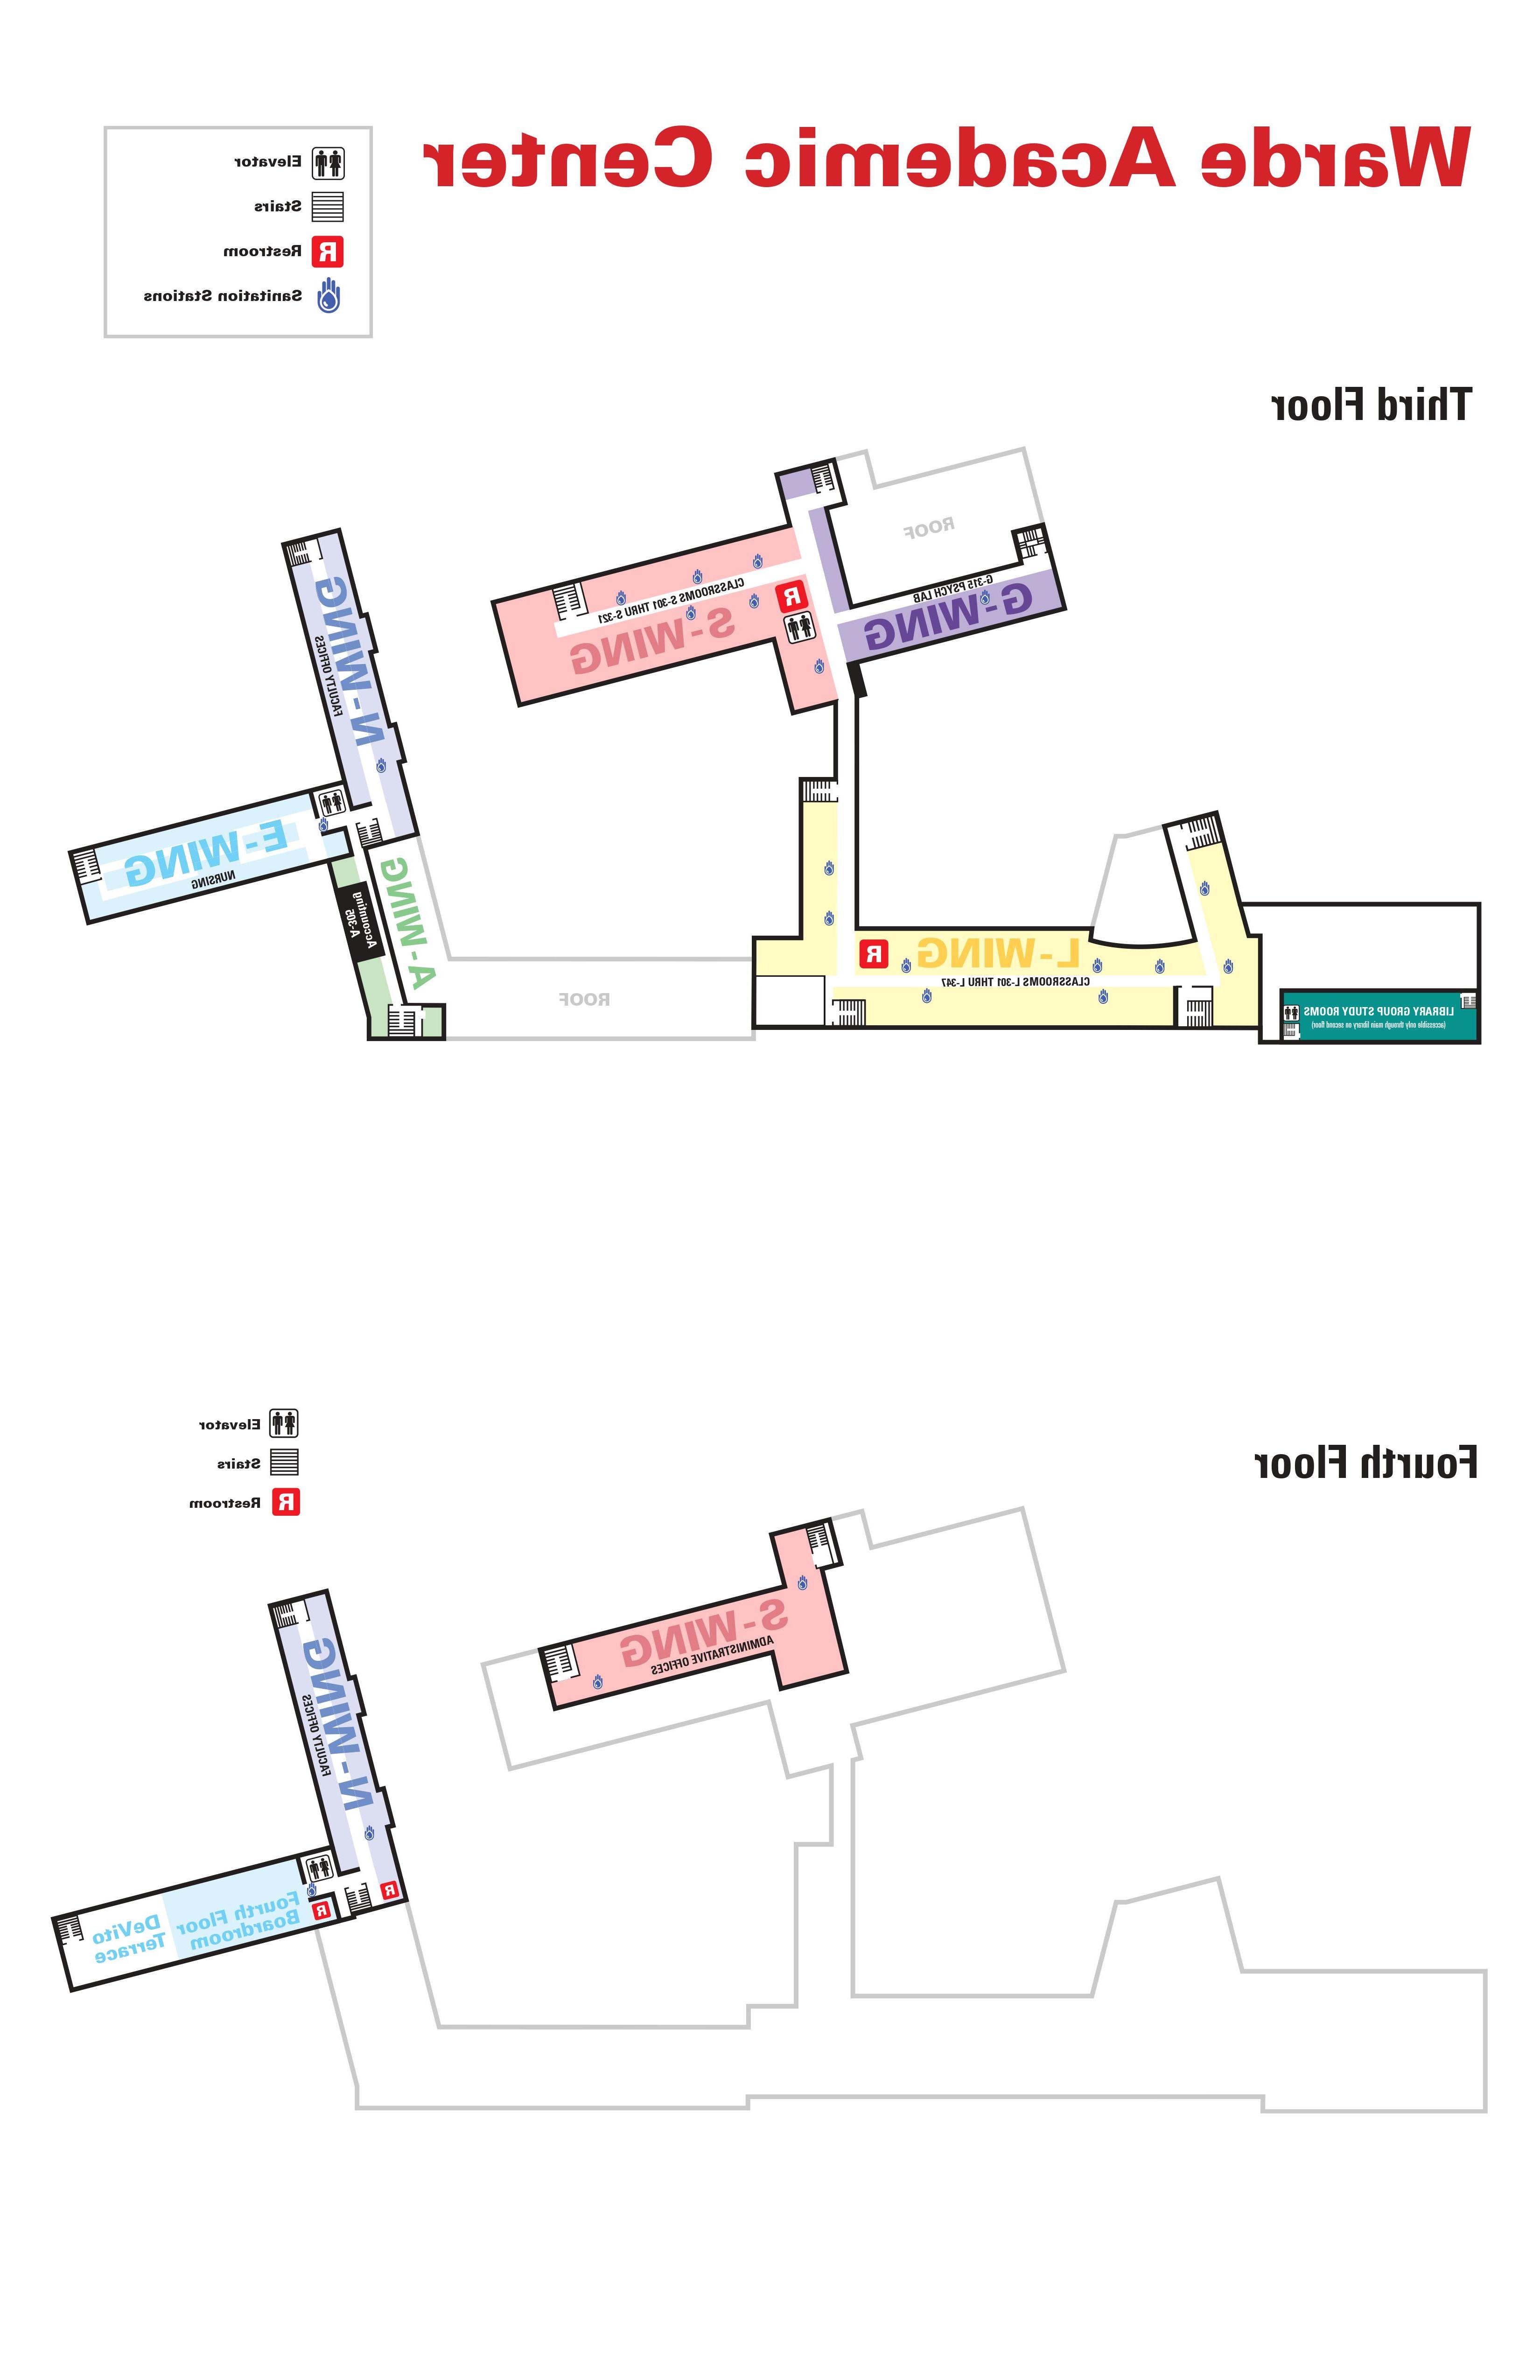 沃德学术中心地图，3-4层